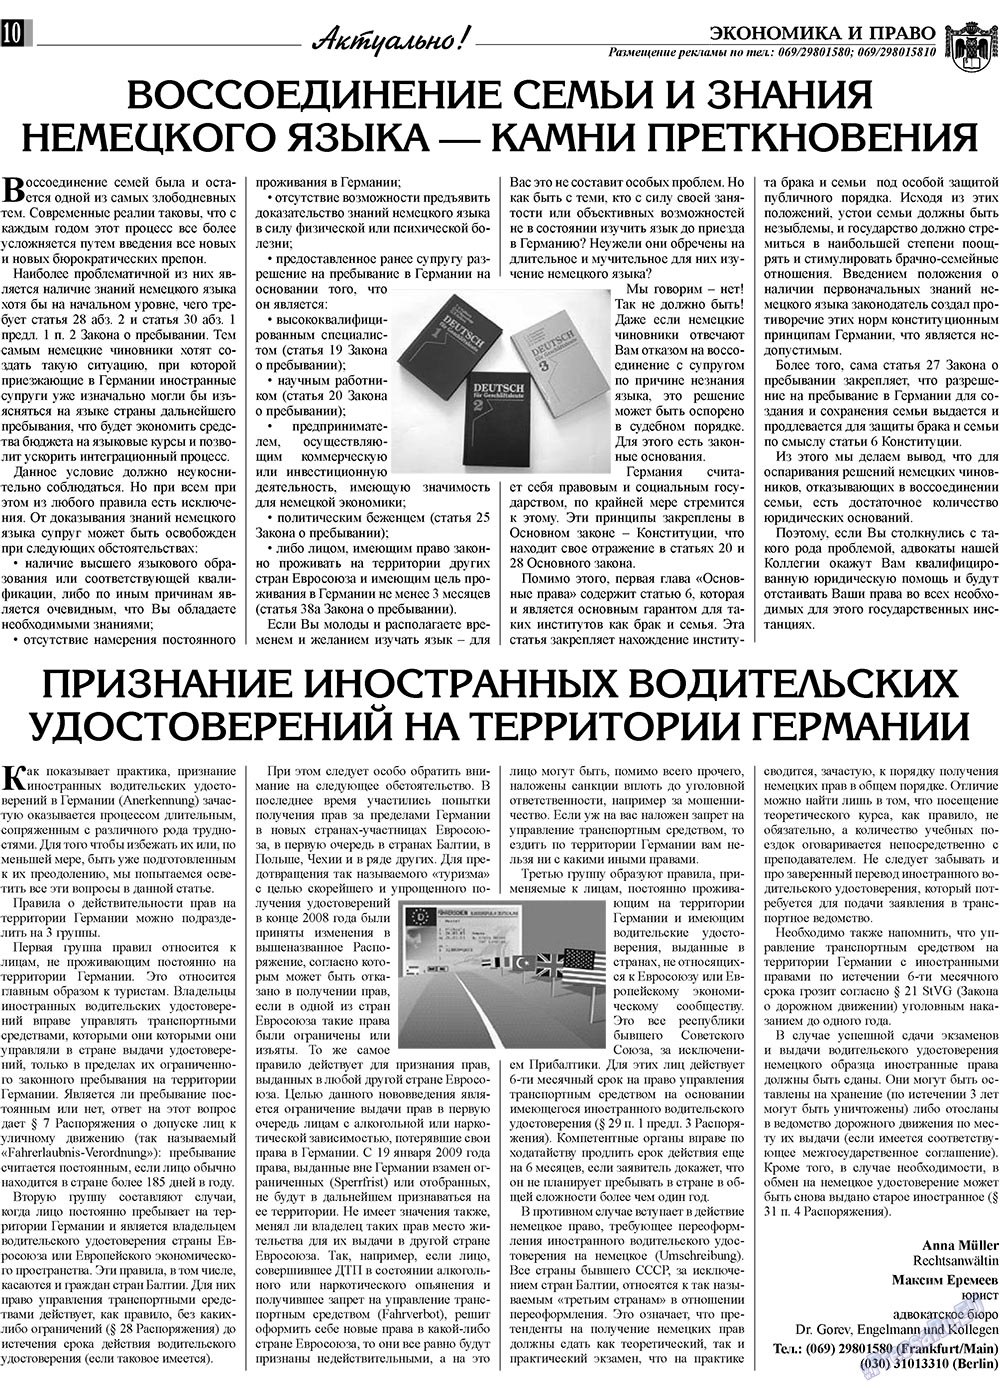 Экономика и право, газета. 2009 №9 стр.10